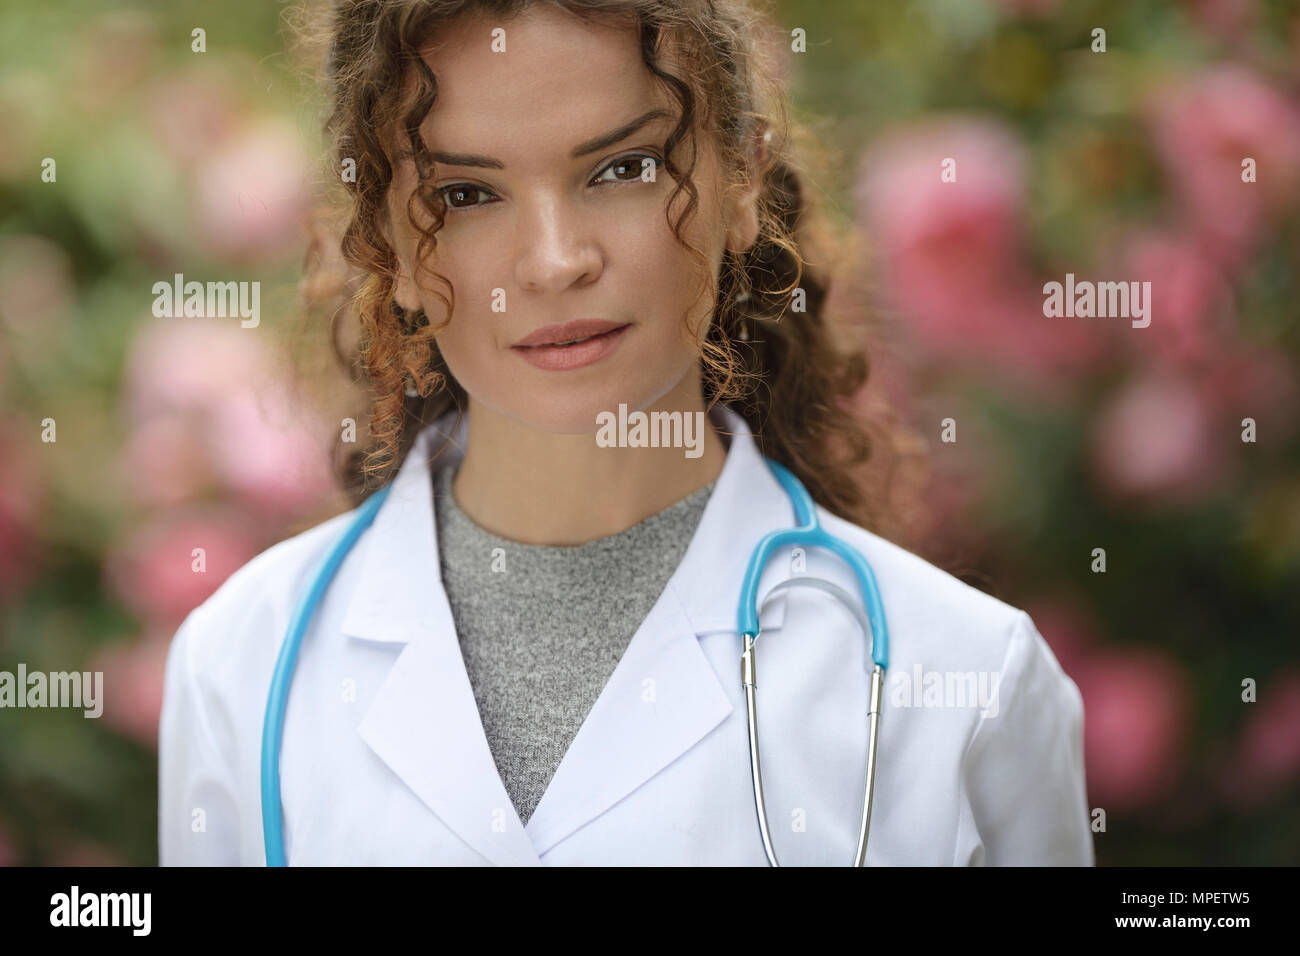 Retrato de una joven mujer, médico, profesional sanitario, médico, médico vistiendo una bata de laboratorio natural en entornos exteriores con blosso Foto de stock